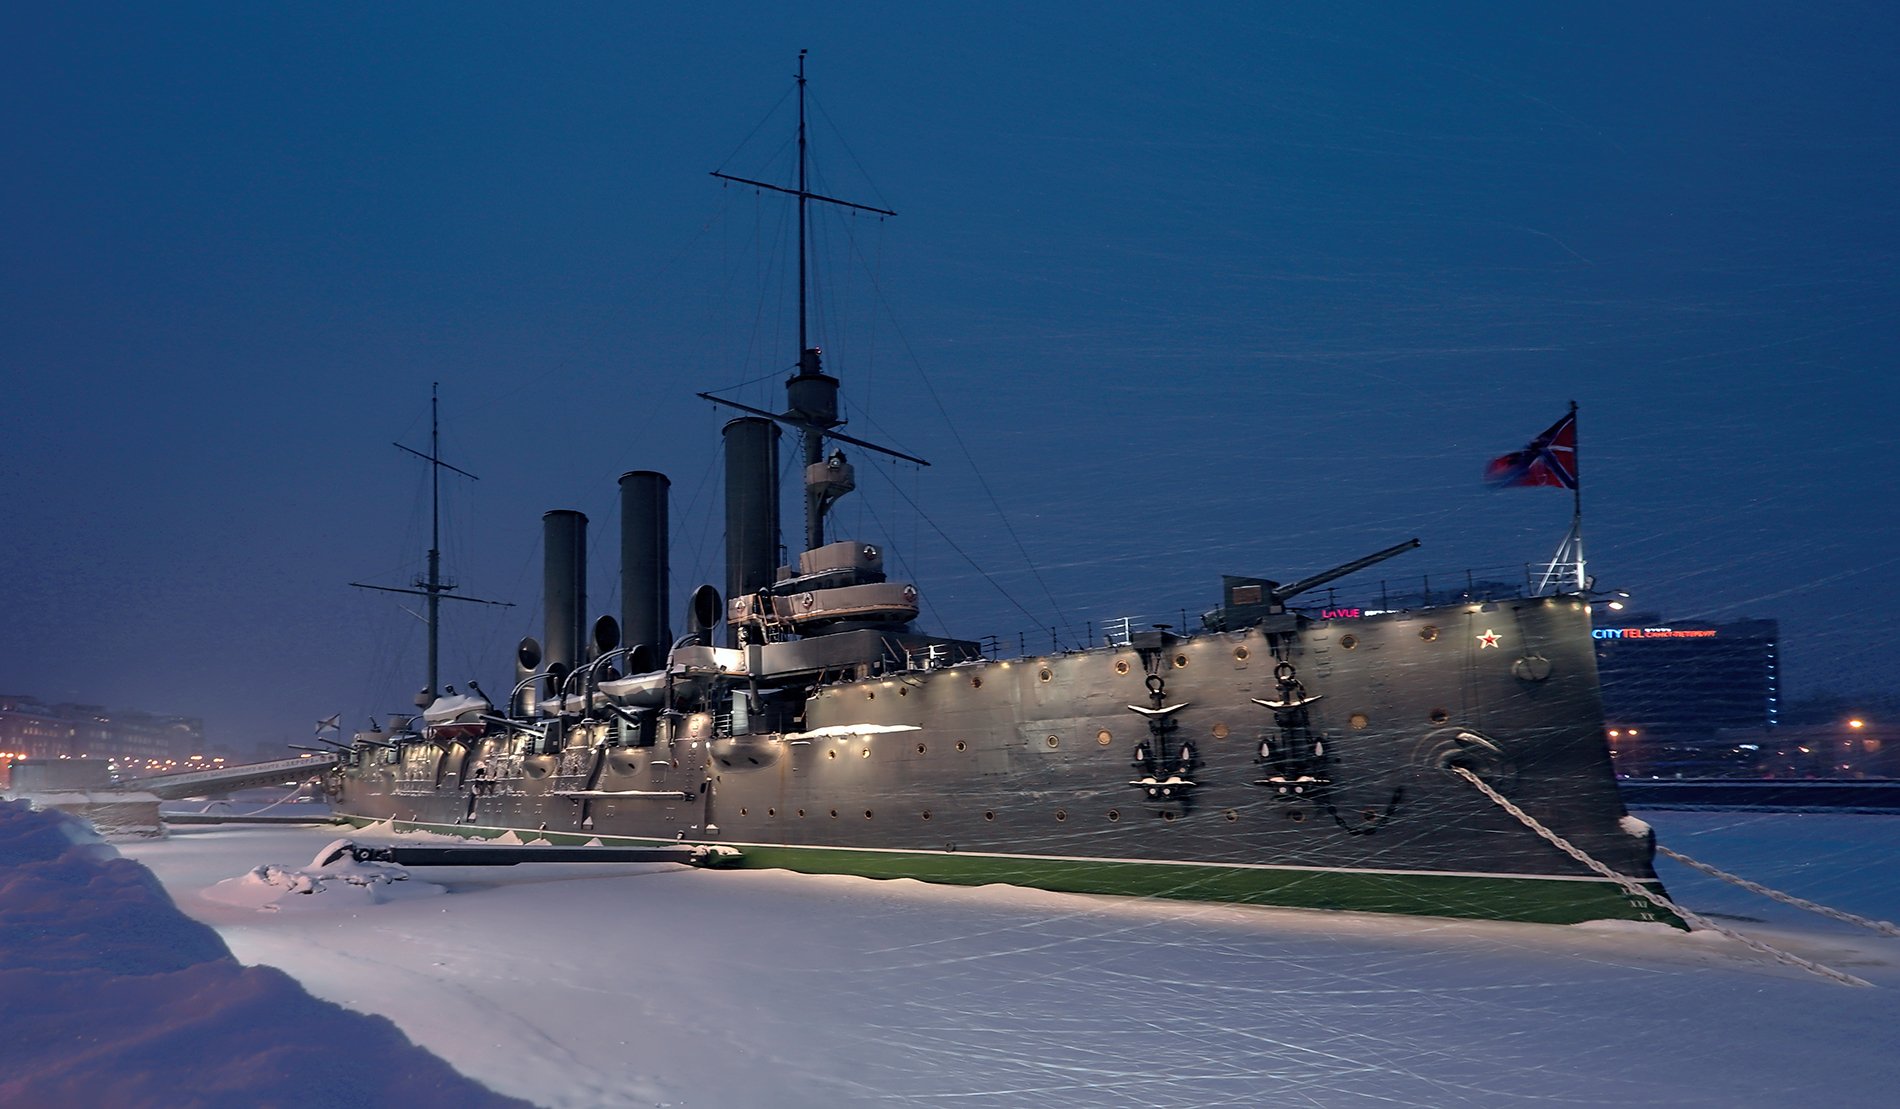 санкт-петербург,крейсер аврора,зима,метель, alexOmRam